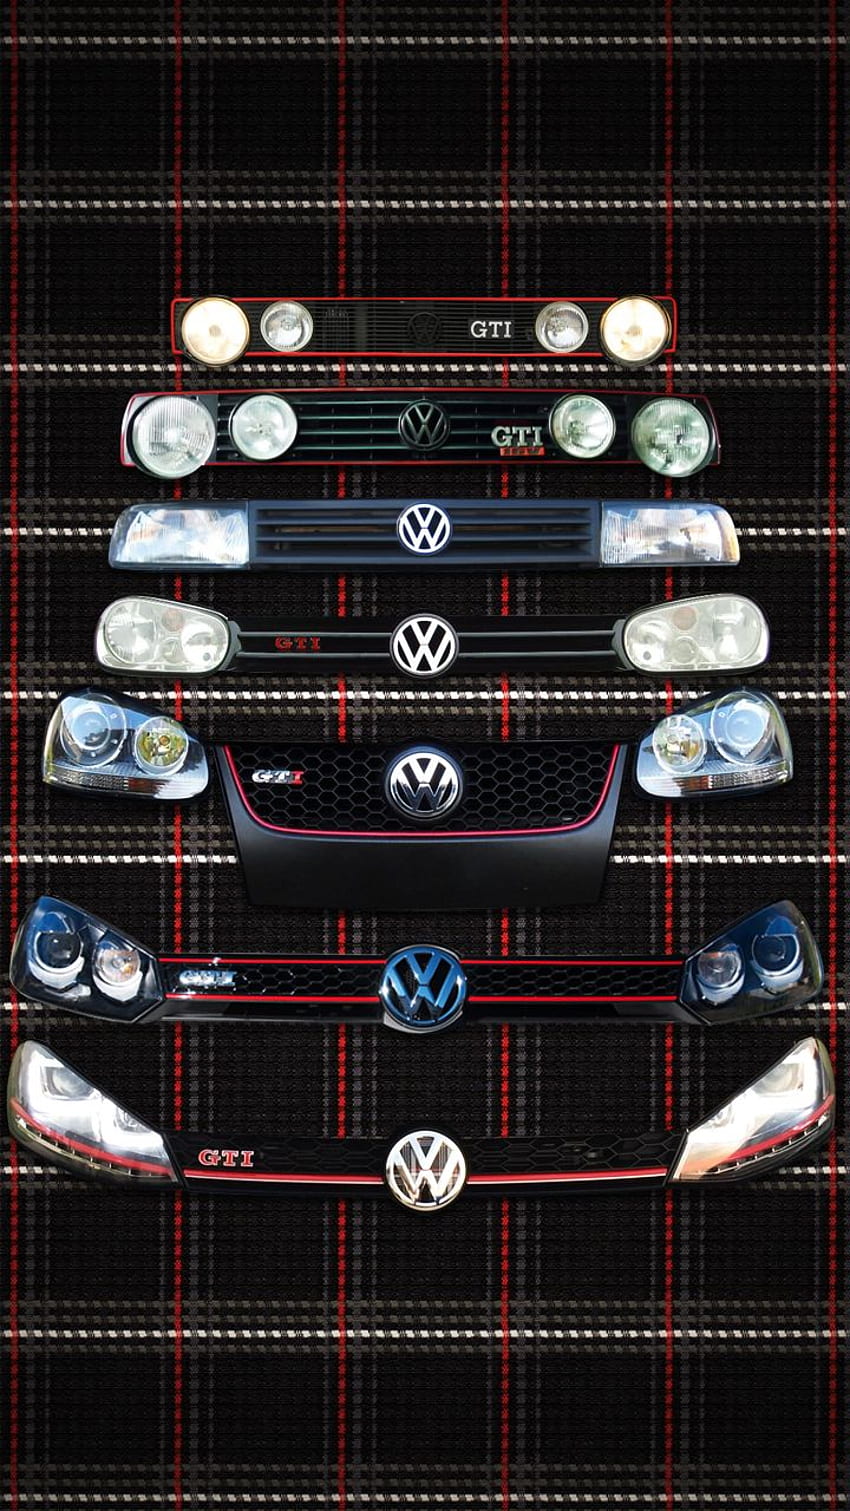 GTI MKI MKVII . VW GTI MKVI フォーラム / VW ゴルフ R フォーラム / VW ゴルフ MKVI フォーラム / VW GTI フォーラム、フォルクスワーゲン ゴルフ Mk6 HD電話の壁紙